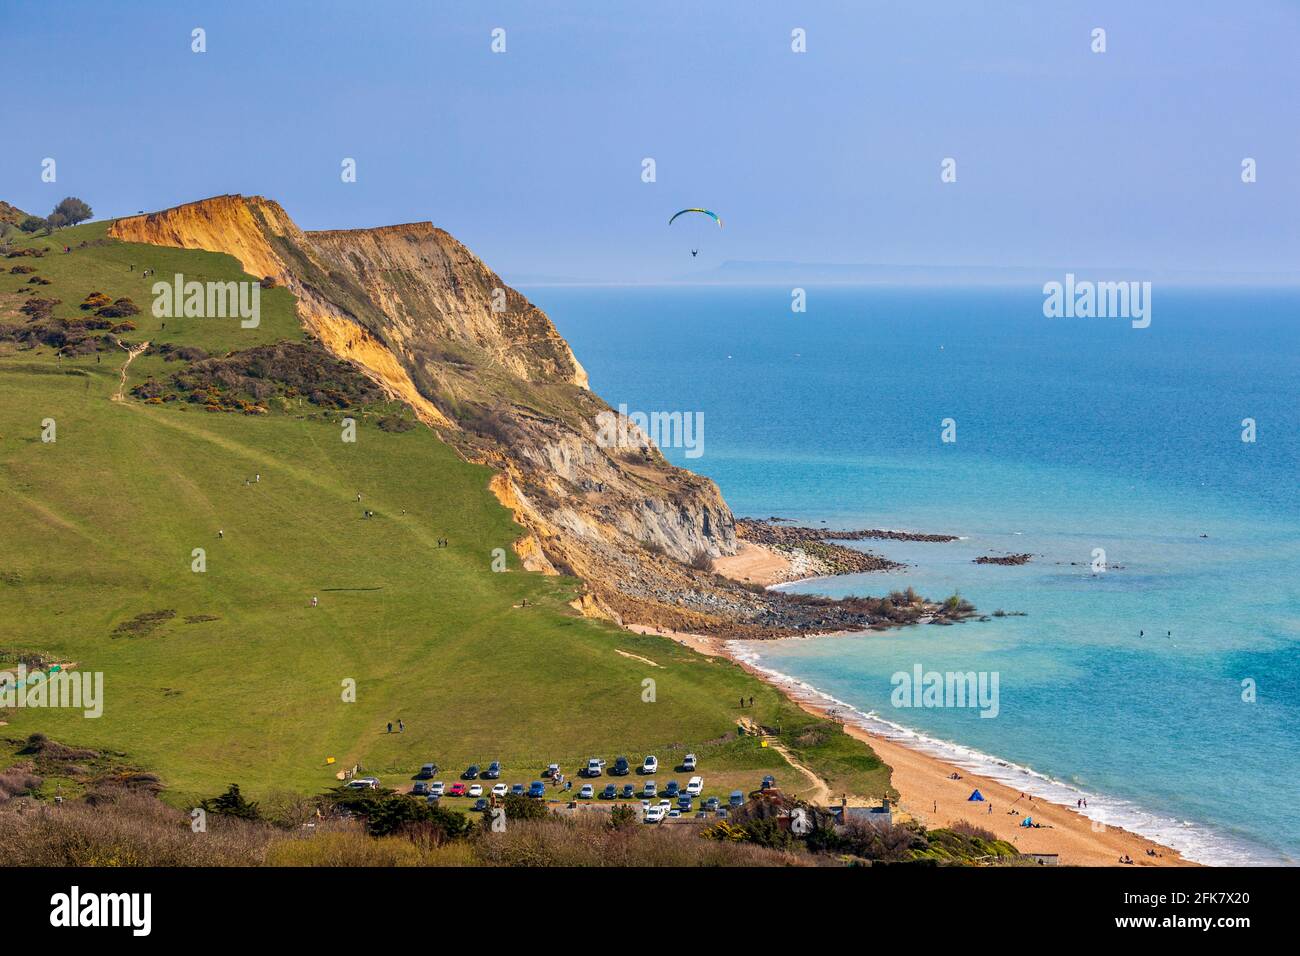 La plage de Seatown avec le Ridge Cliff Land tombent sur la côte jurassique en avril 2021, Dorset, Angleterre Banque D'Images